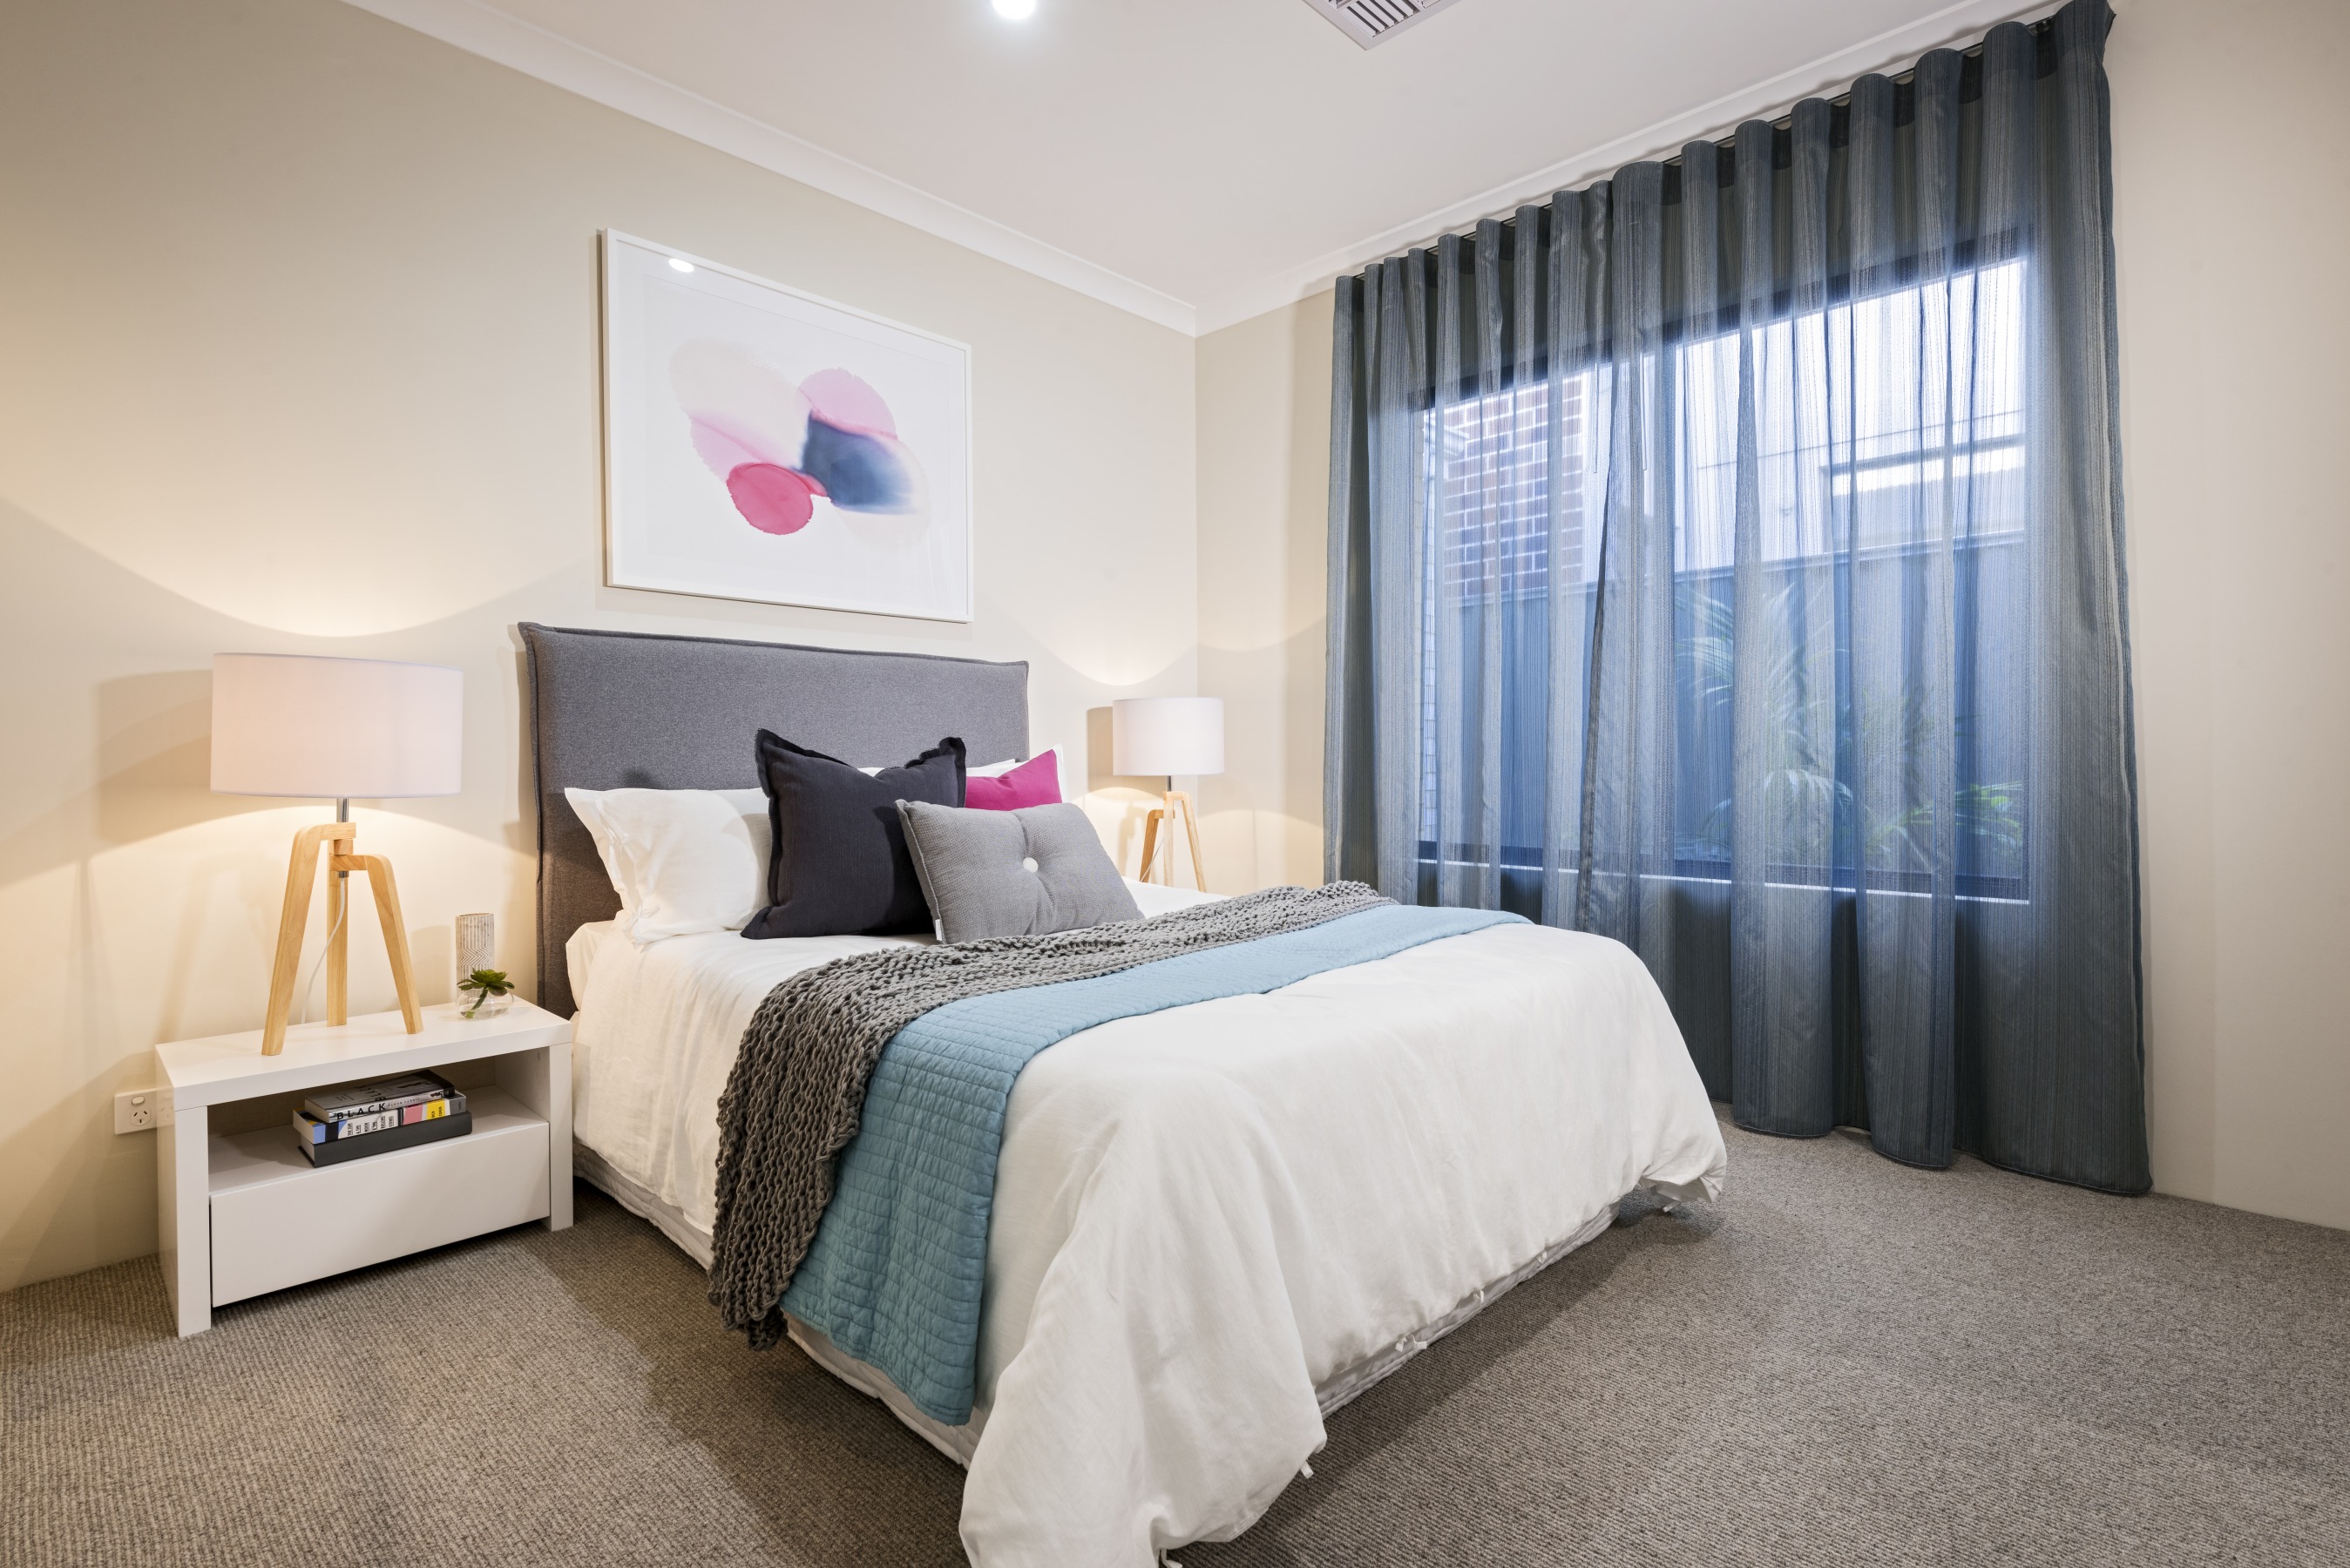 The Vaucluse | Home Design - DreamStart Homes Perth, WA